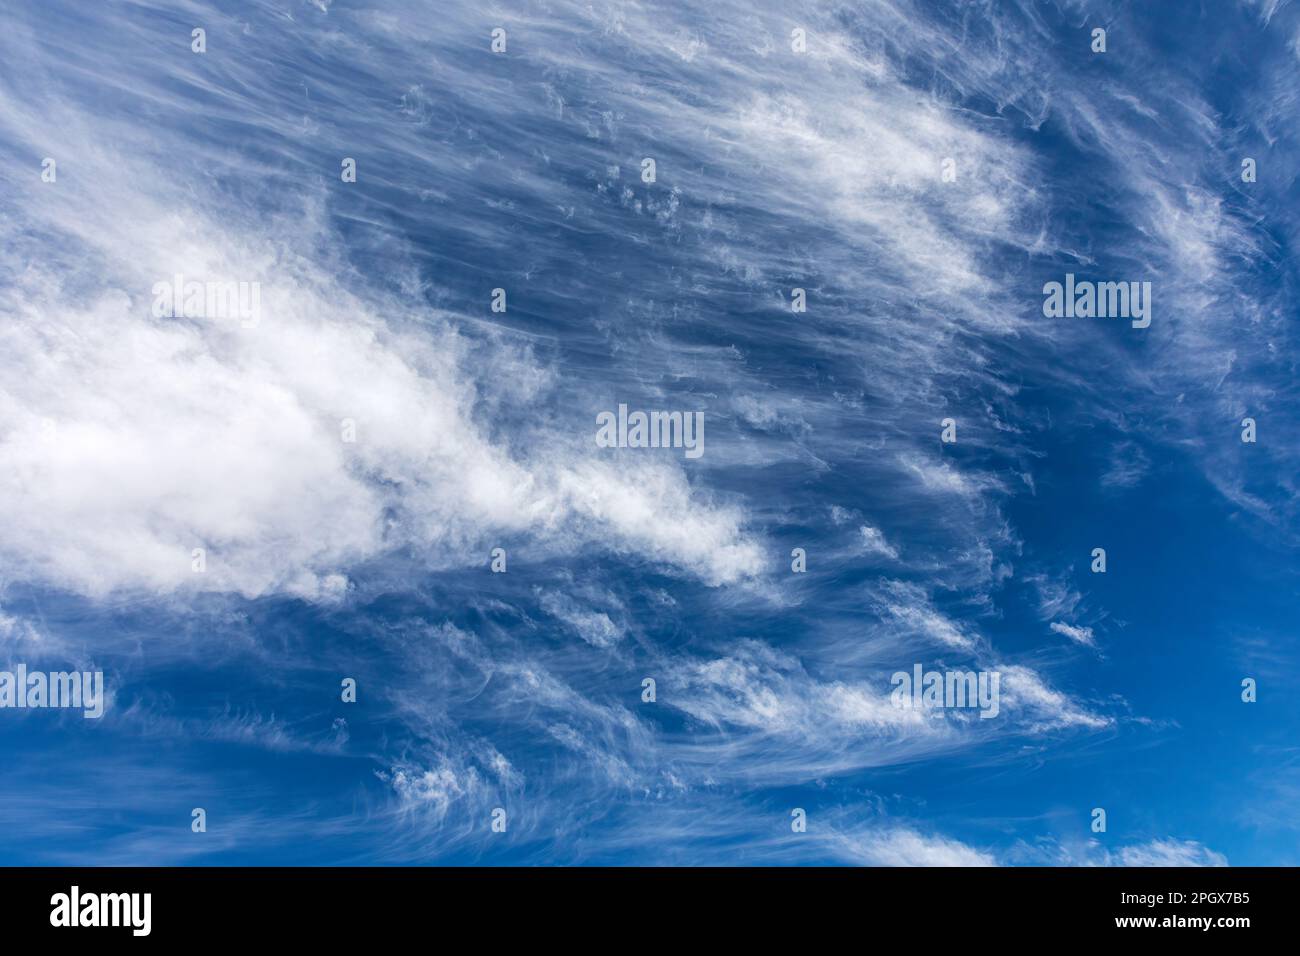 Le nuvole di cirrus wisy si muovono attraverso un cielo blu Foto Stock